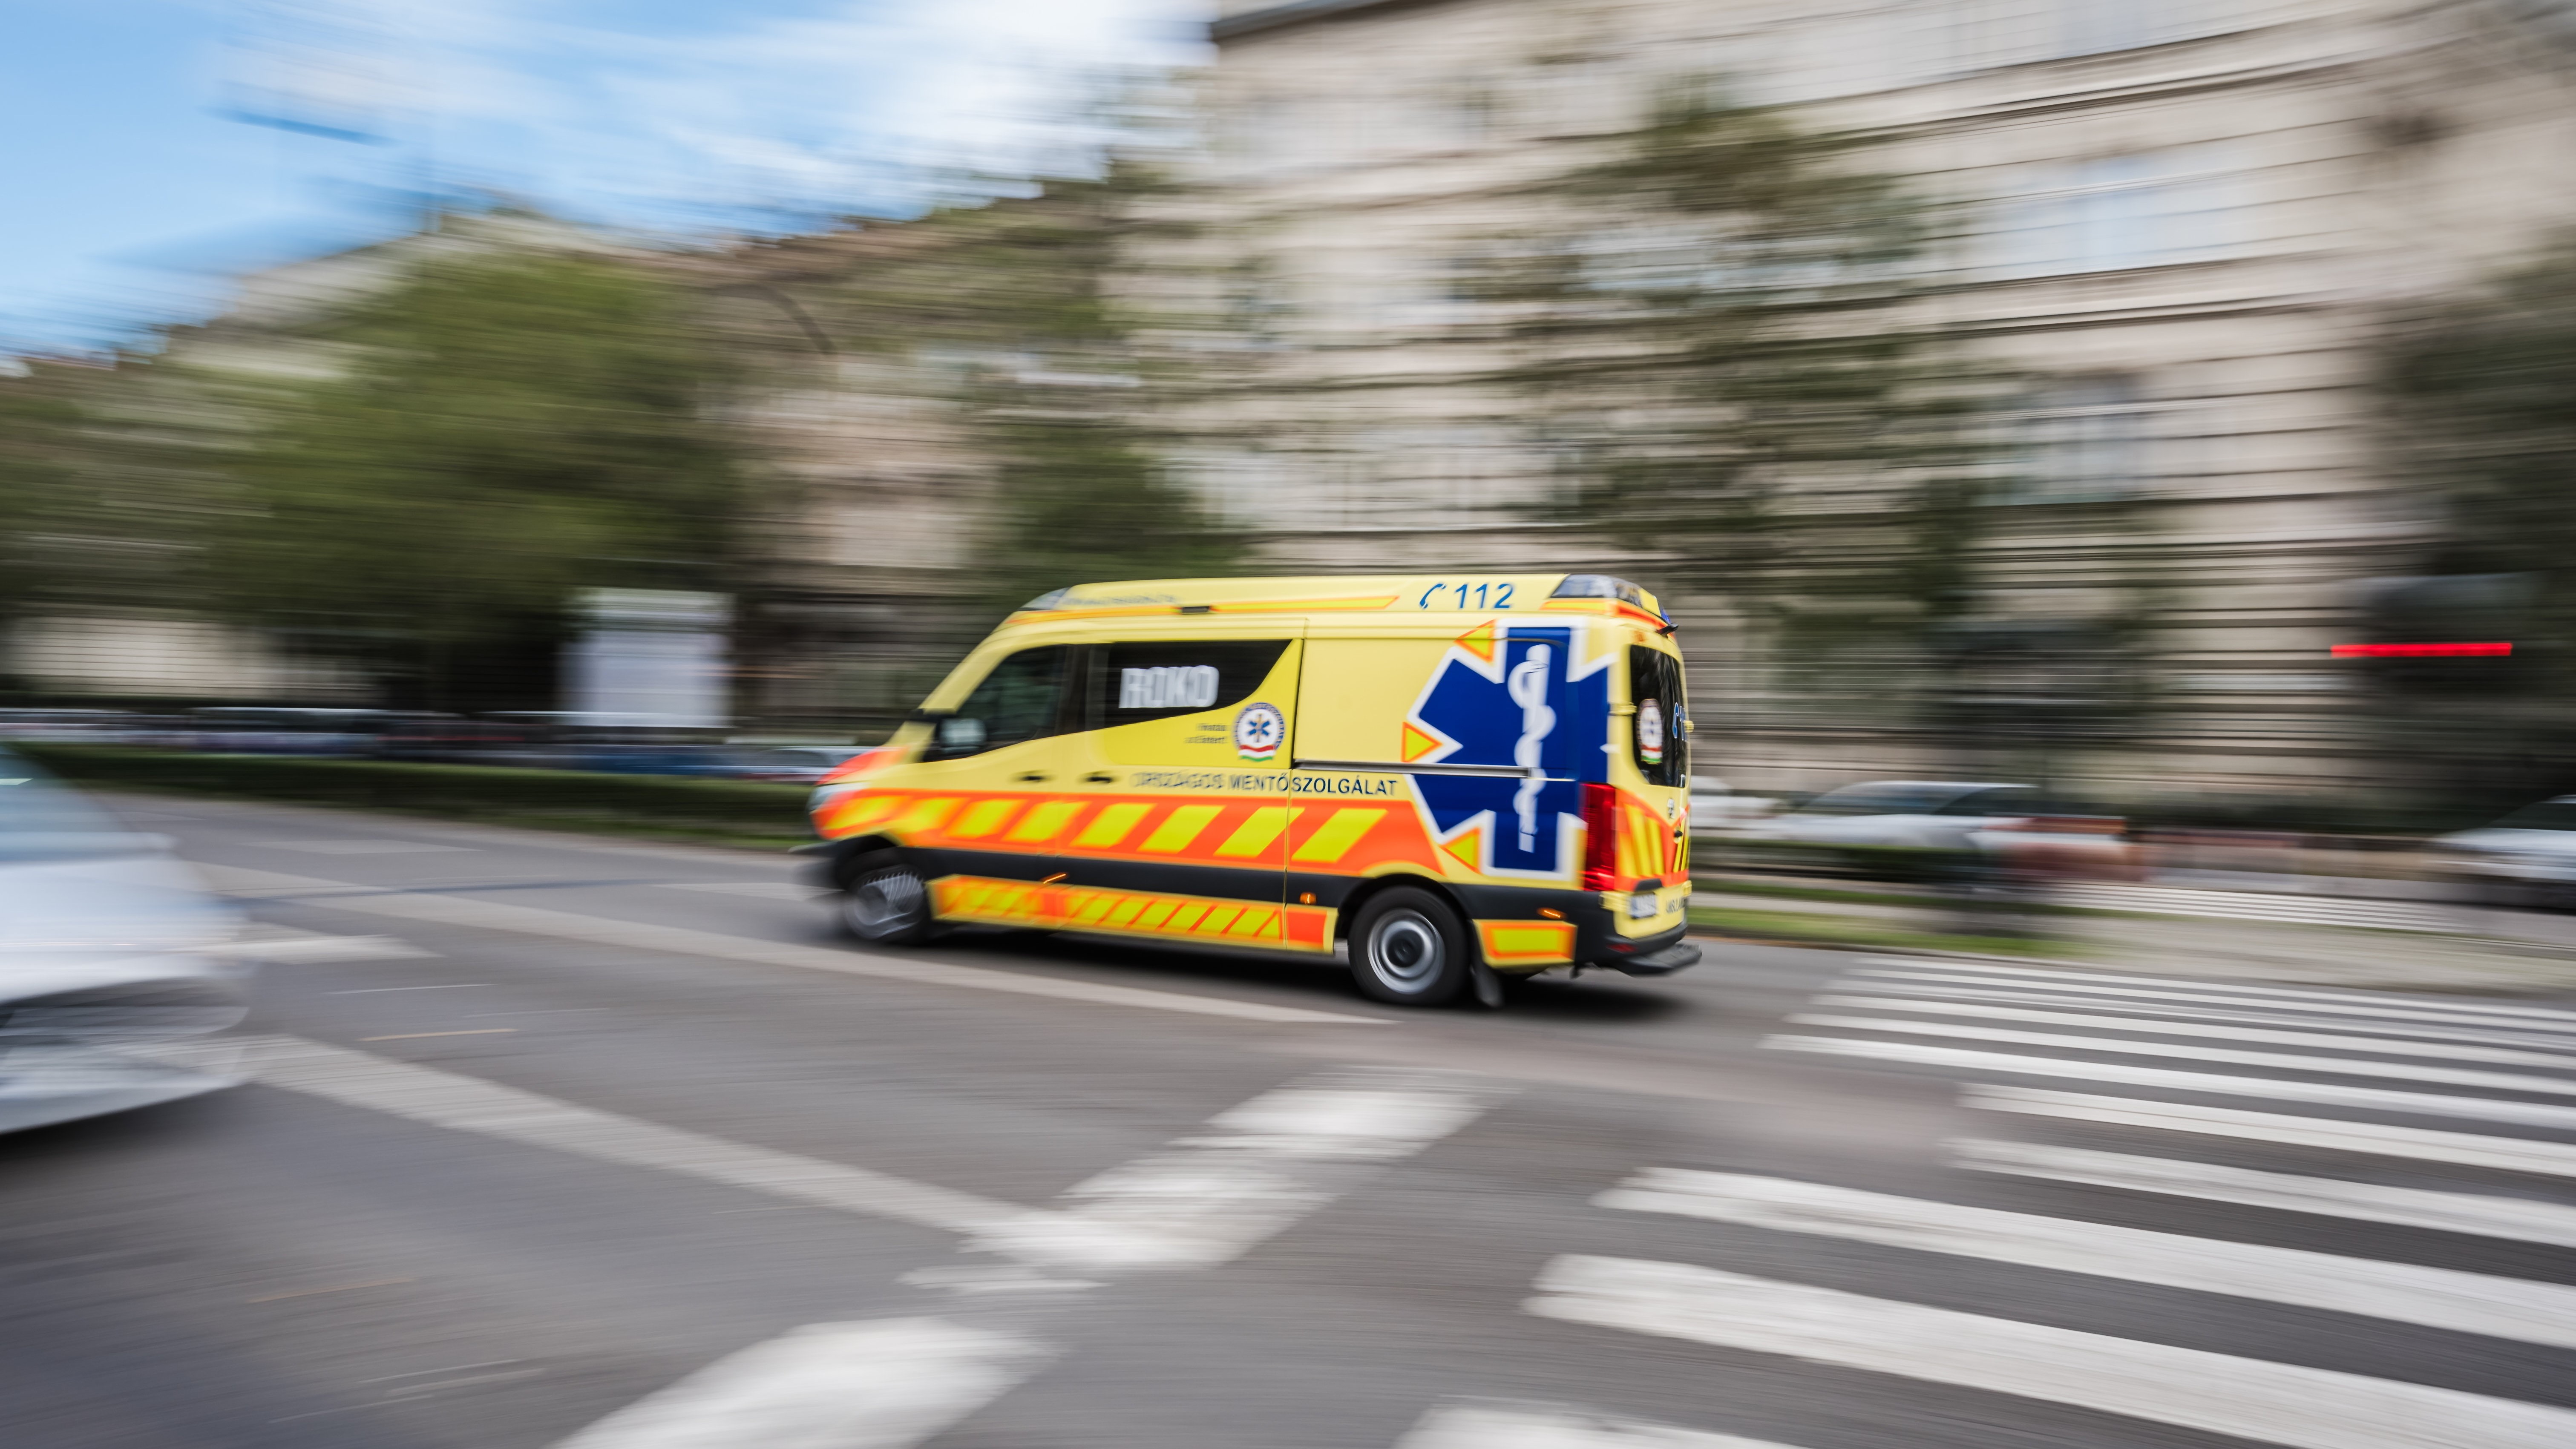 Az Országos Mentőszolgálat megkülönböztető jelzést használó mentőautója halad a fővárosi Andrássy úton